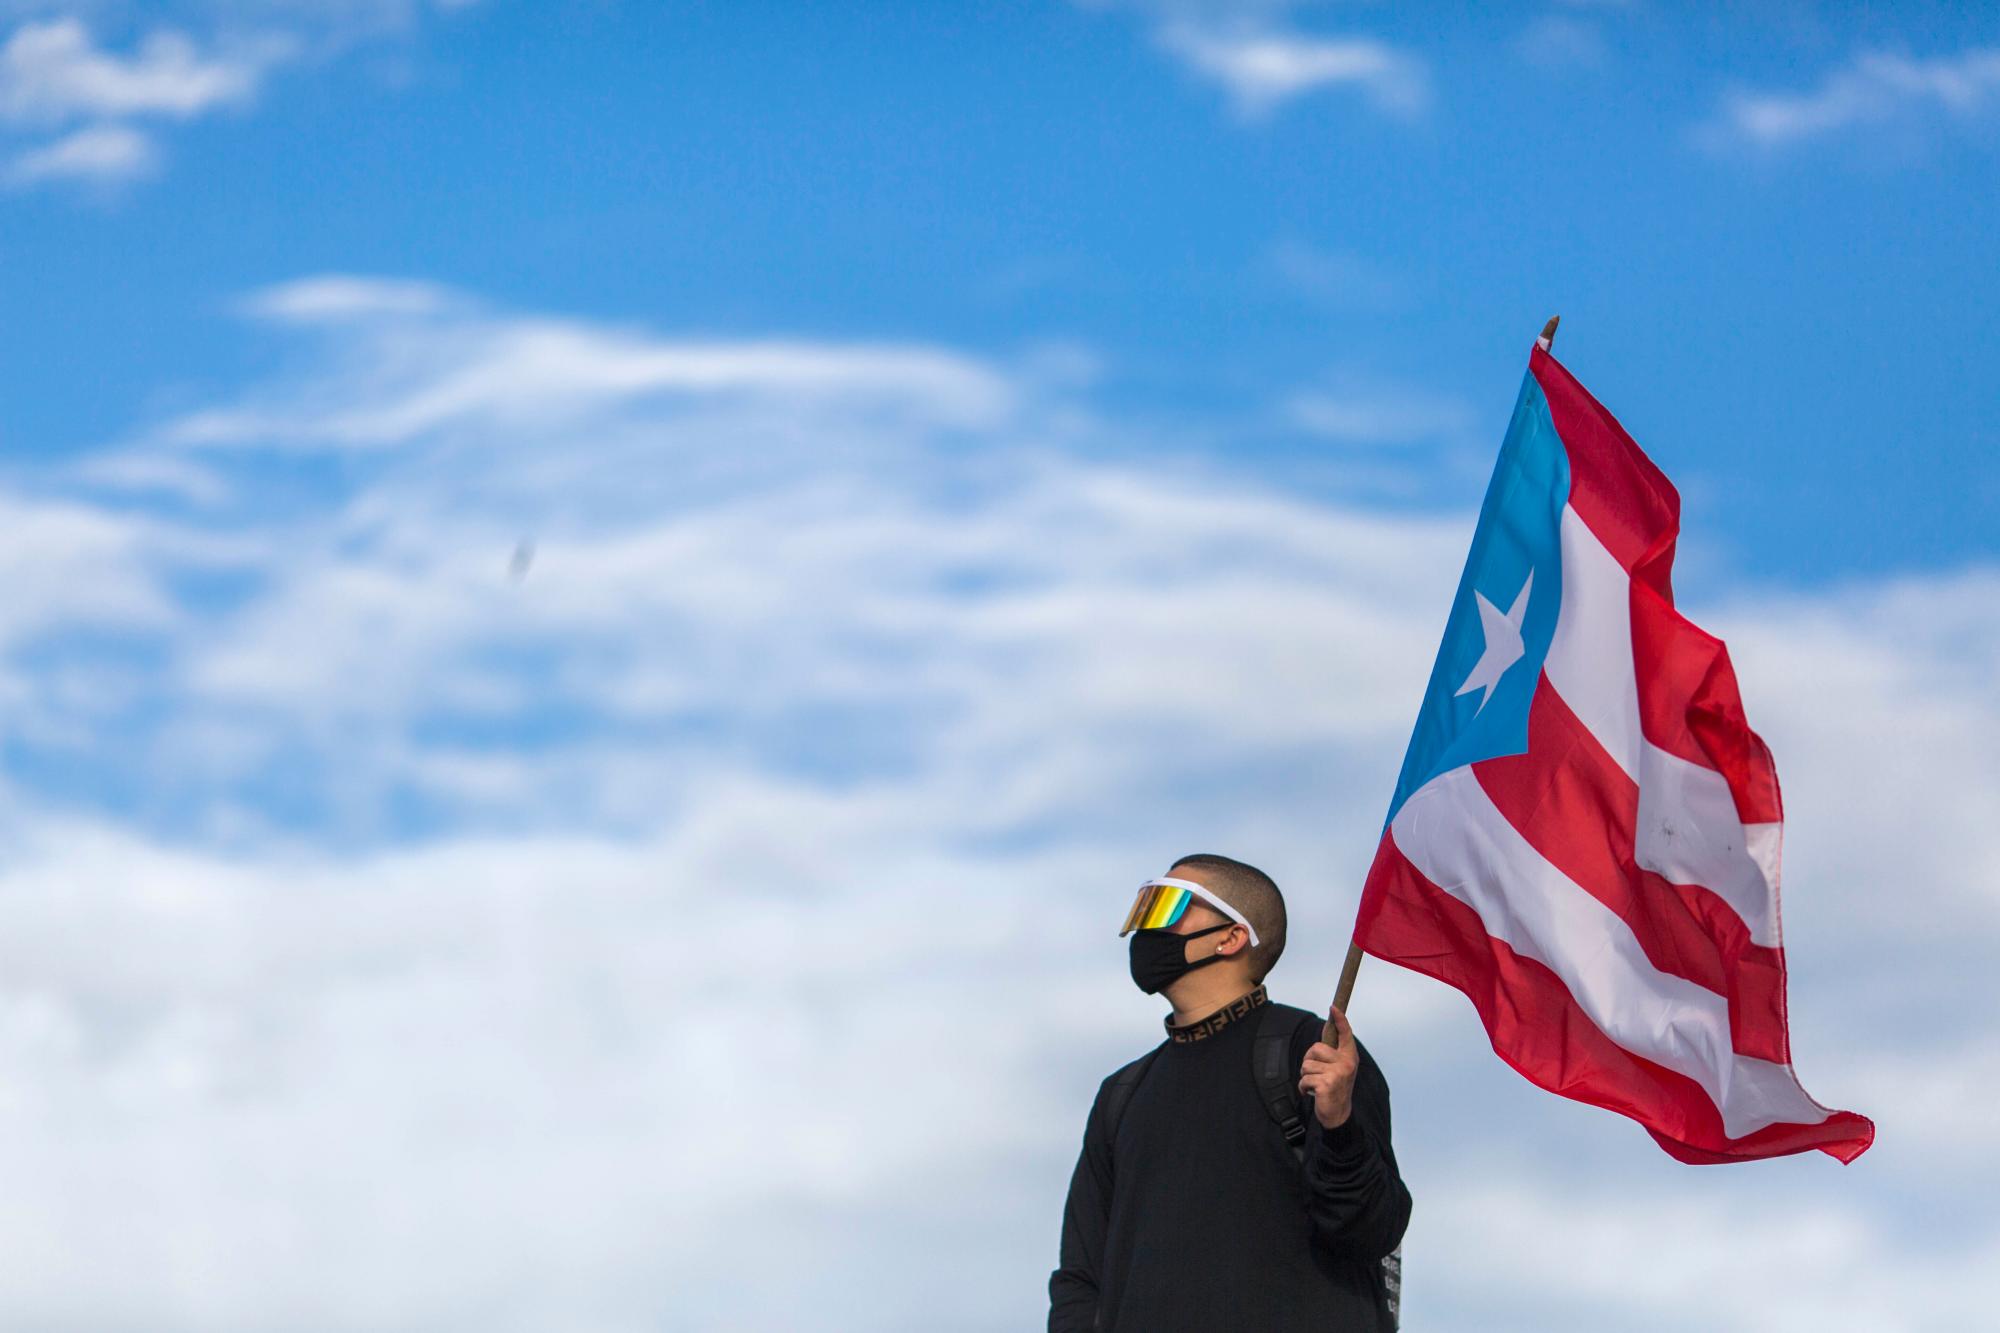 El cantante de trap latino y de reggaeton Benito Antonio Martínez Ocasio, conocido por su nombre artístico de Bad Bunny, sostiene una bandera de Puerto Rico antes de una marcha de protesta contra el gobernador Ricardo Rosello, en San Juan, Puerto Rico, el miércoles 17 de julio de 2019.